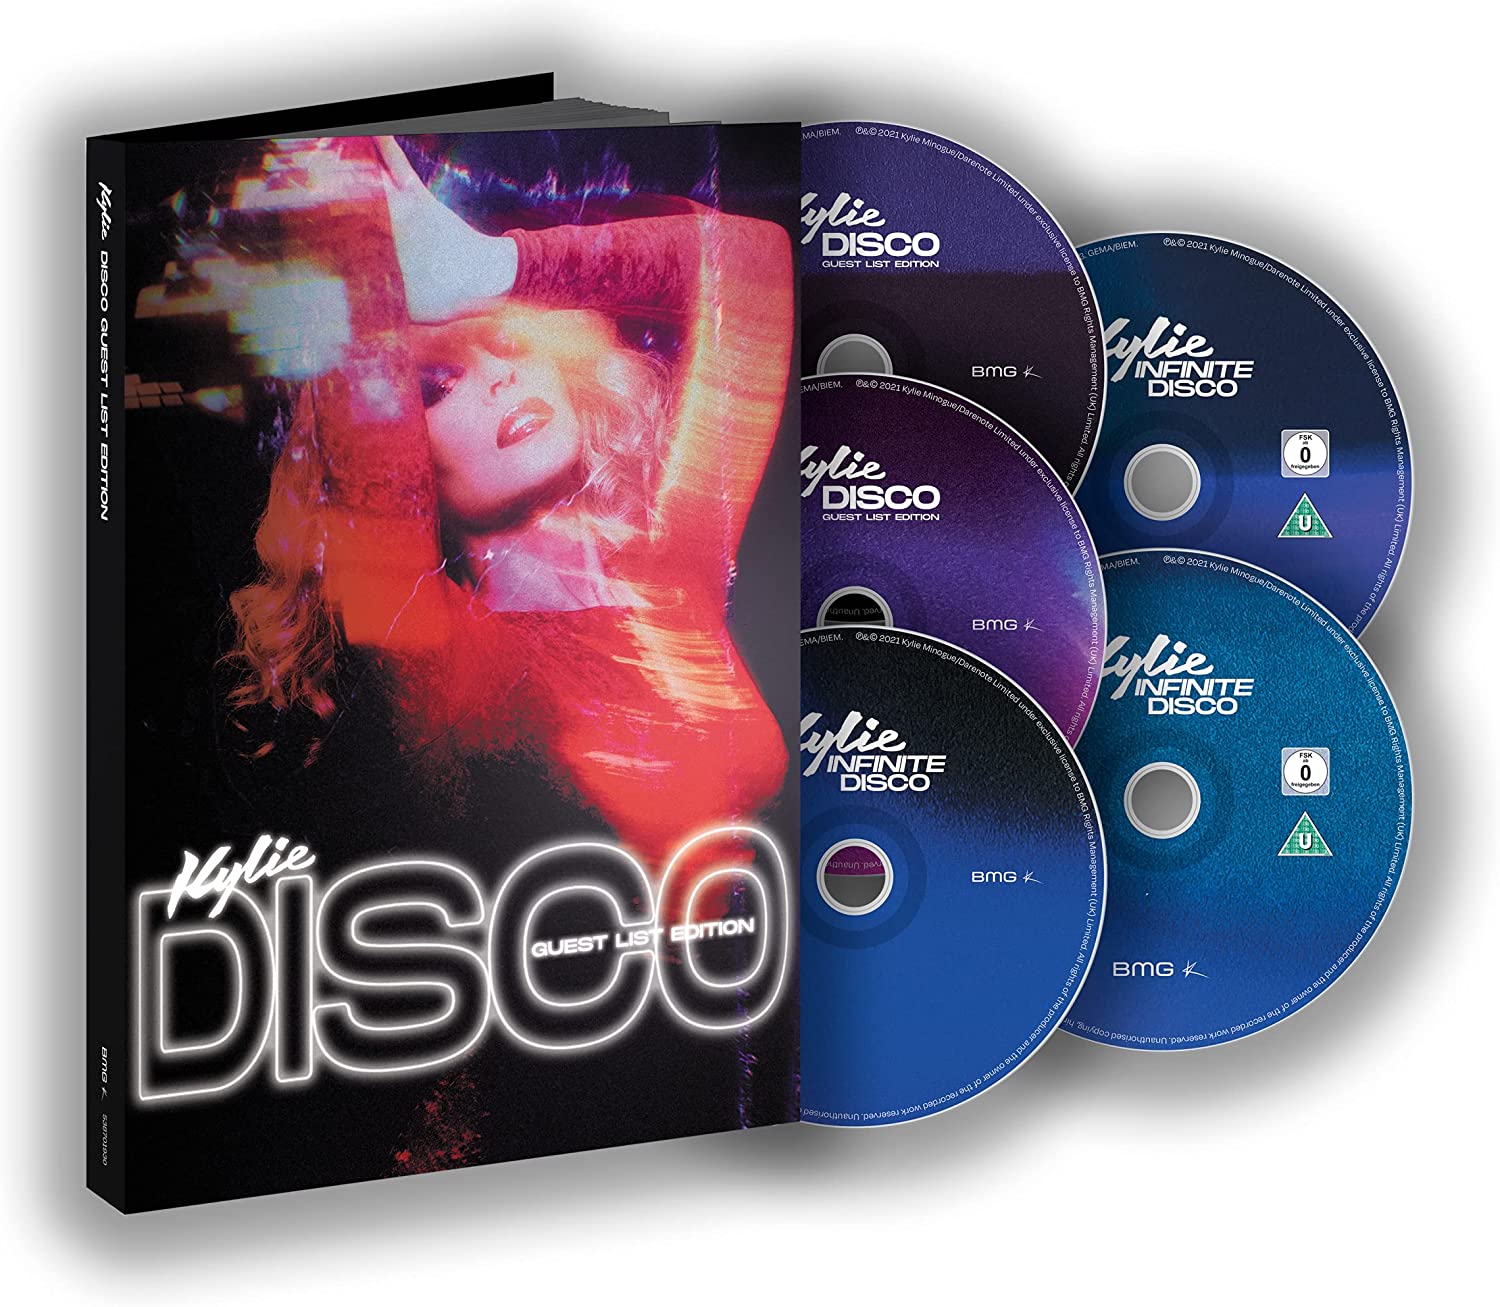 Kylie Minogue / DISCO Guest List Edition – SuperDeluxeEdition